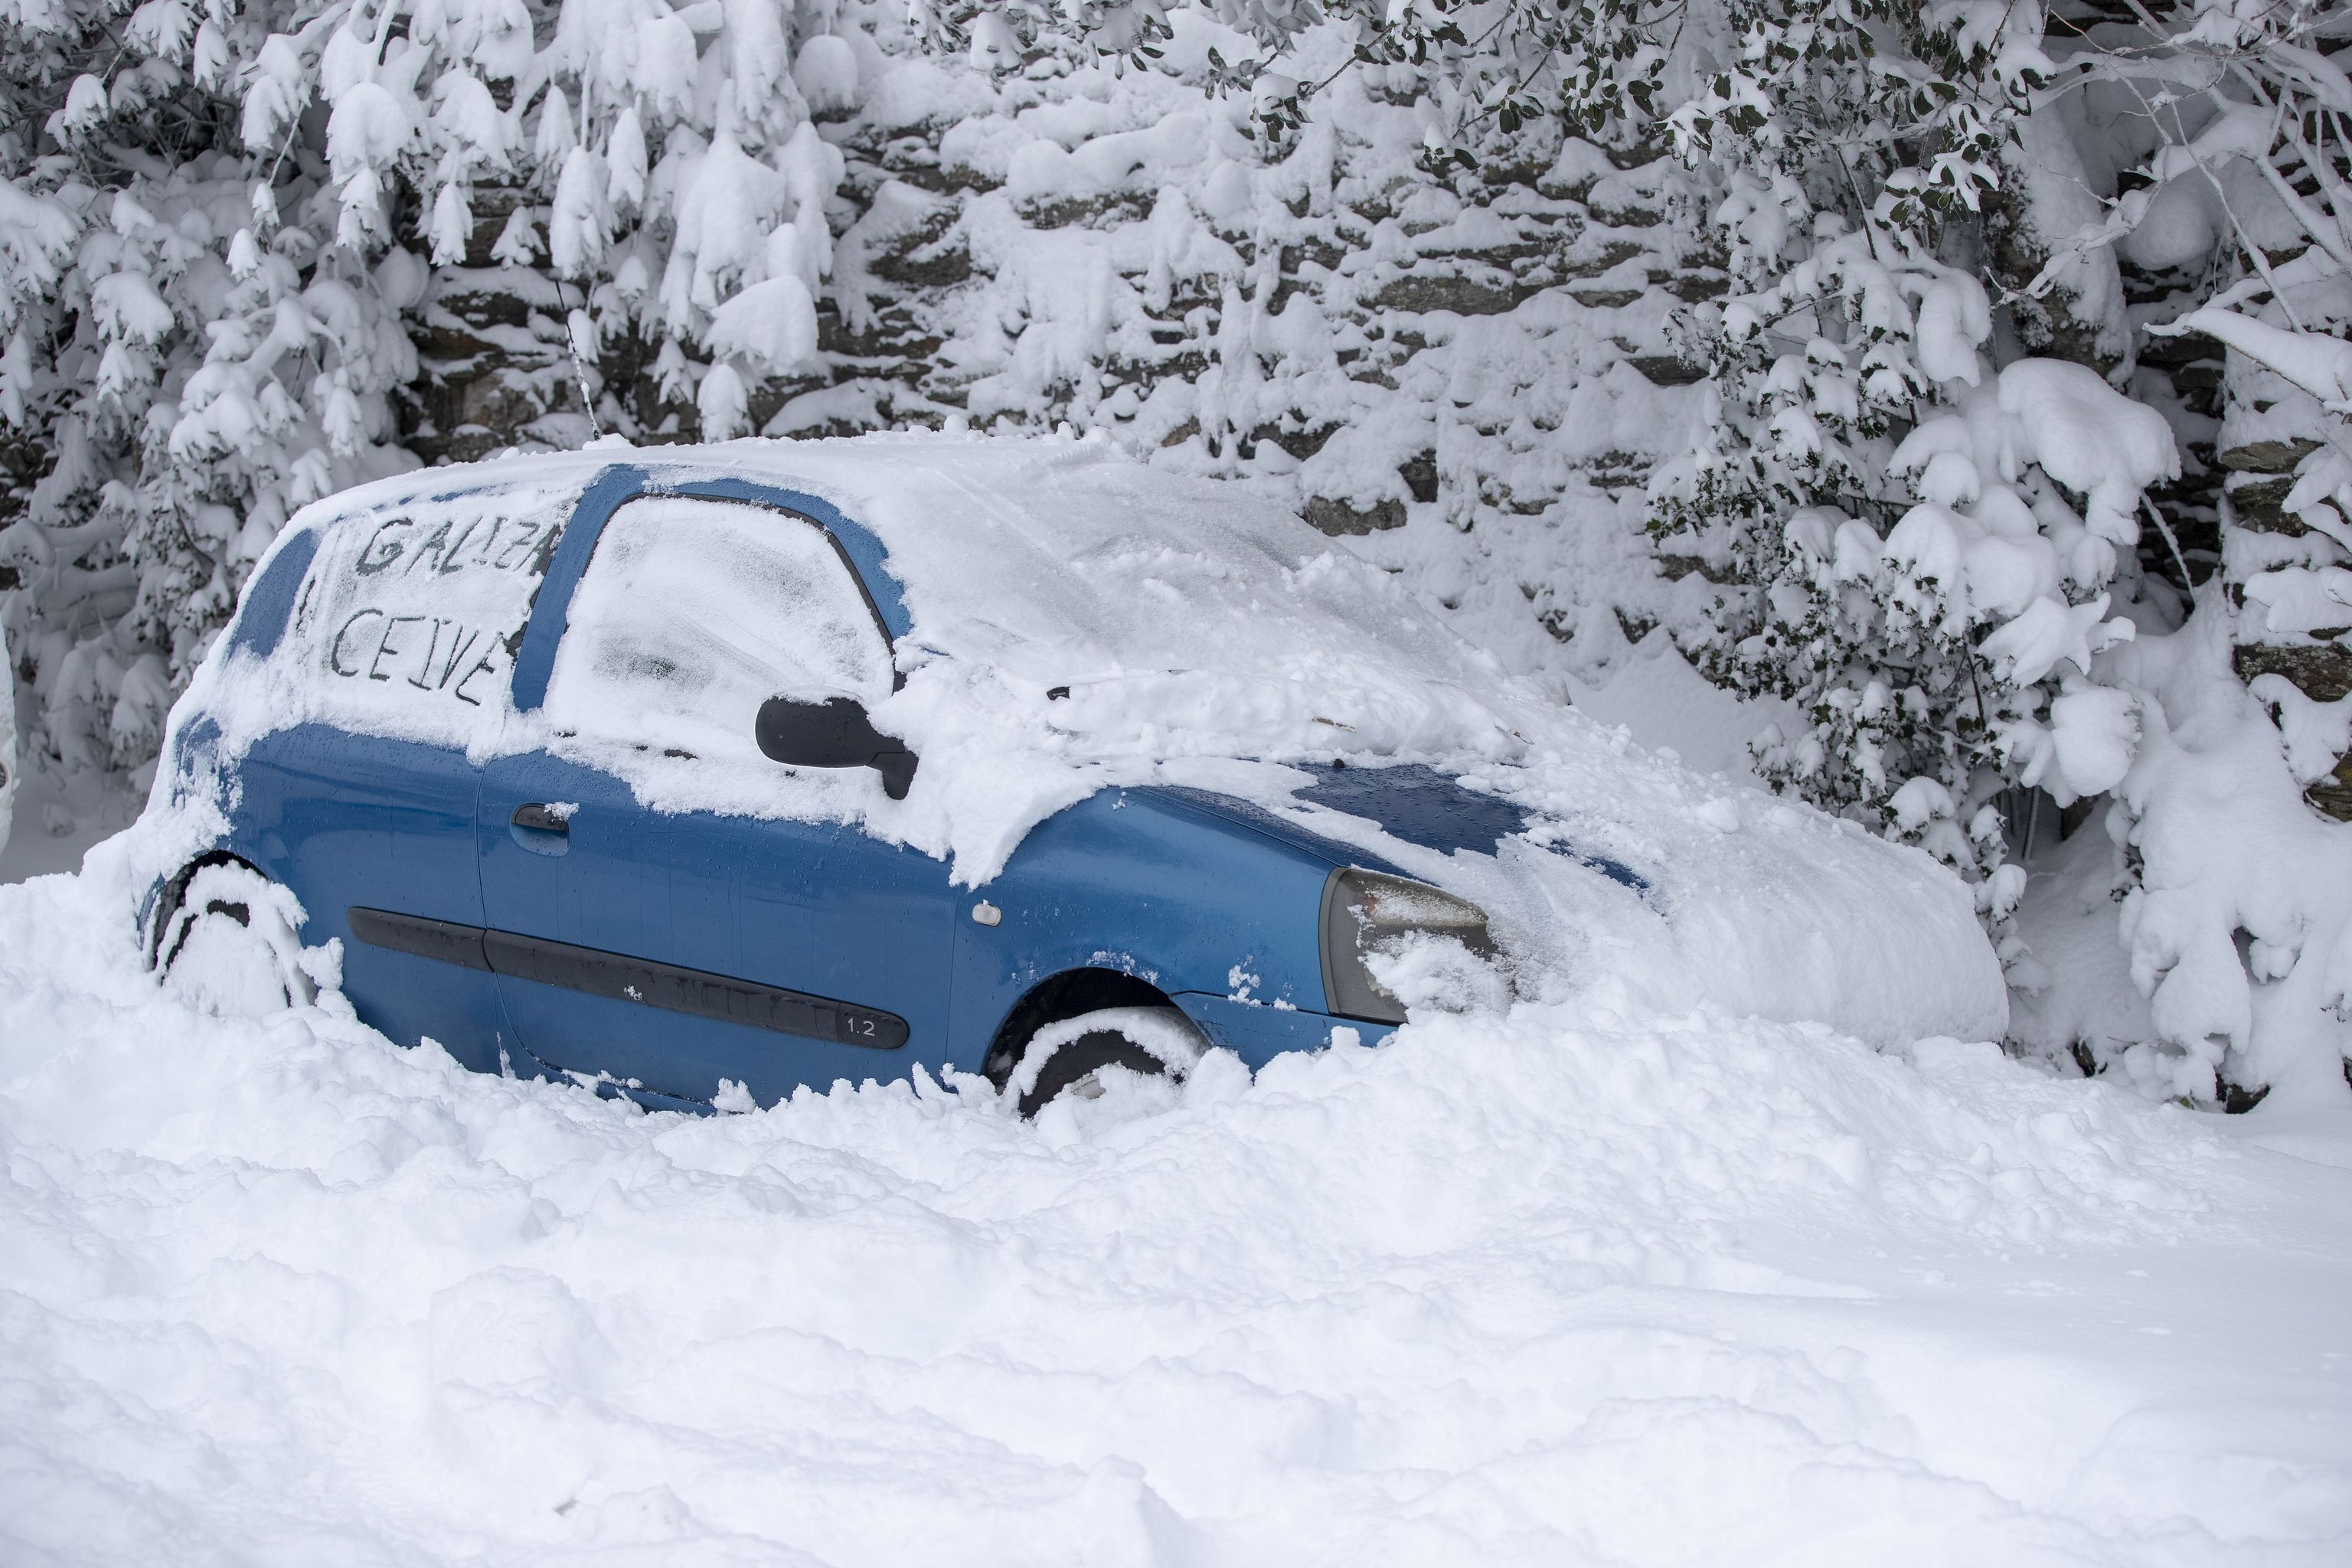 La nieve sepulta a varios vehículos que permanecen estacionados, este miércoles en Pedrafita do Cebreiro, Lugo. El primer gran temporal del invierno en España, por el paso de la borrasca Fien, ha cubierto este miércoles de nieve la mitad norte peninsular, lo que dificulta el tráfico en diversas vías.